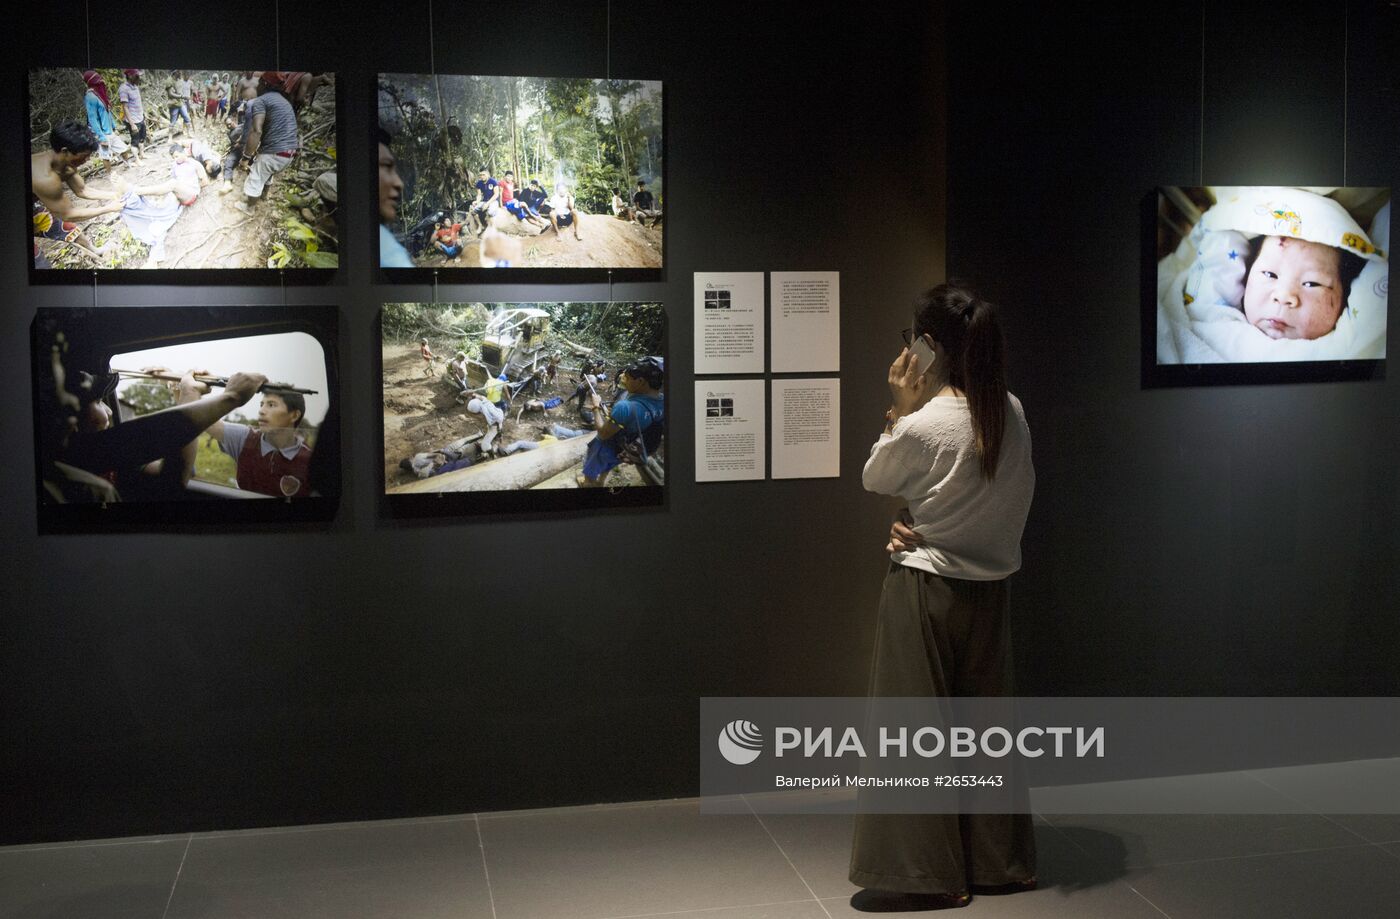 Фотографы МИА "Россия сегодня" стали триумфаторами CHIPP